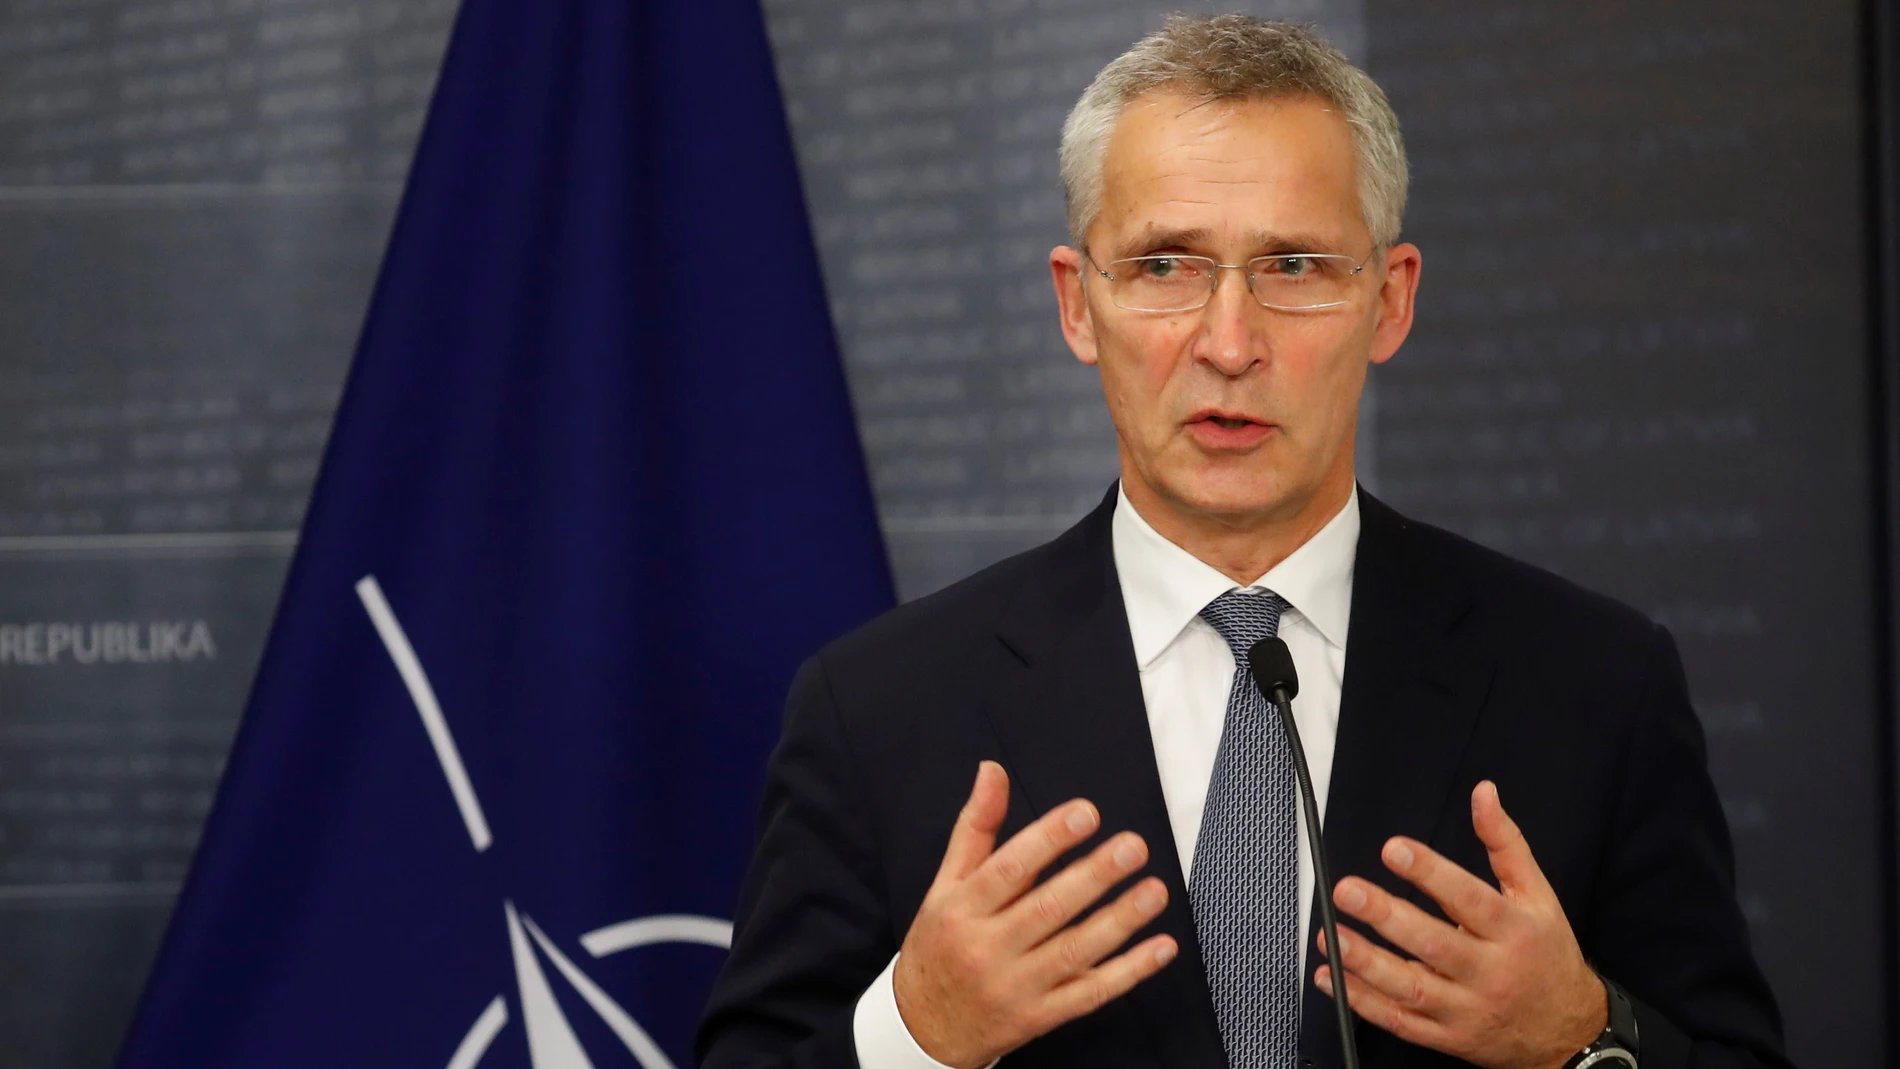 Si Rusia decide usar la fuerza, “naturalmente habrá consecuencias”, advirtió el secretario general de la OTAN Jens Stoltenberg